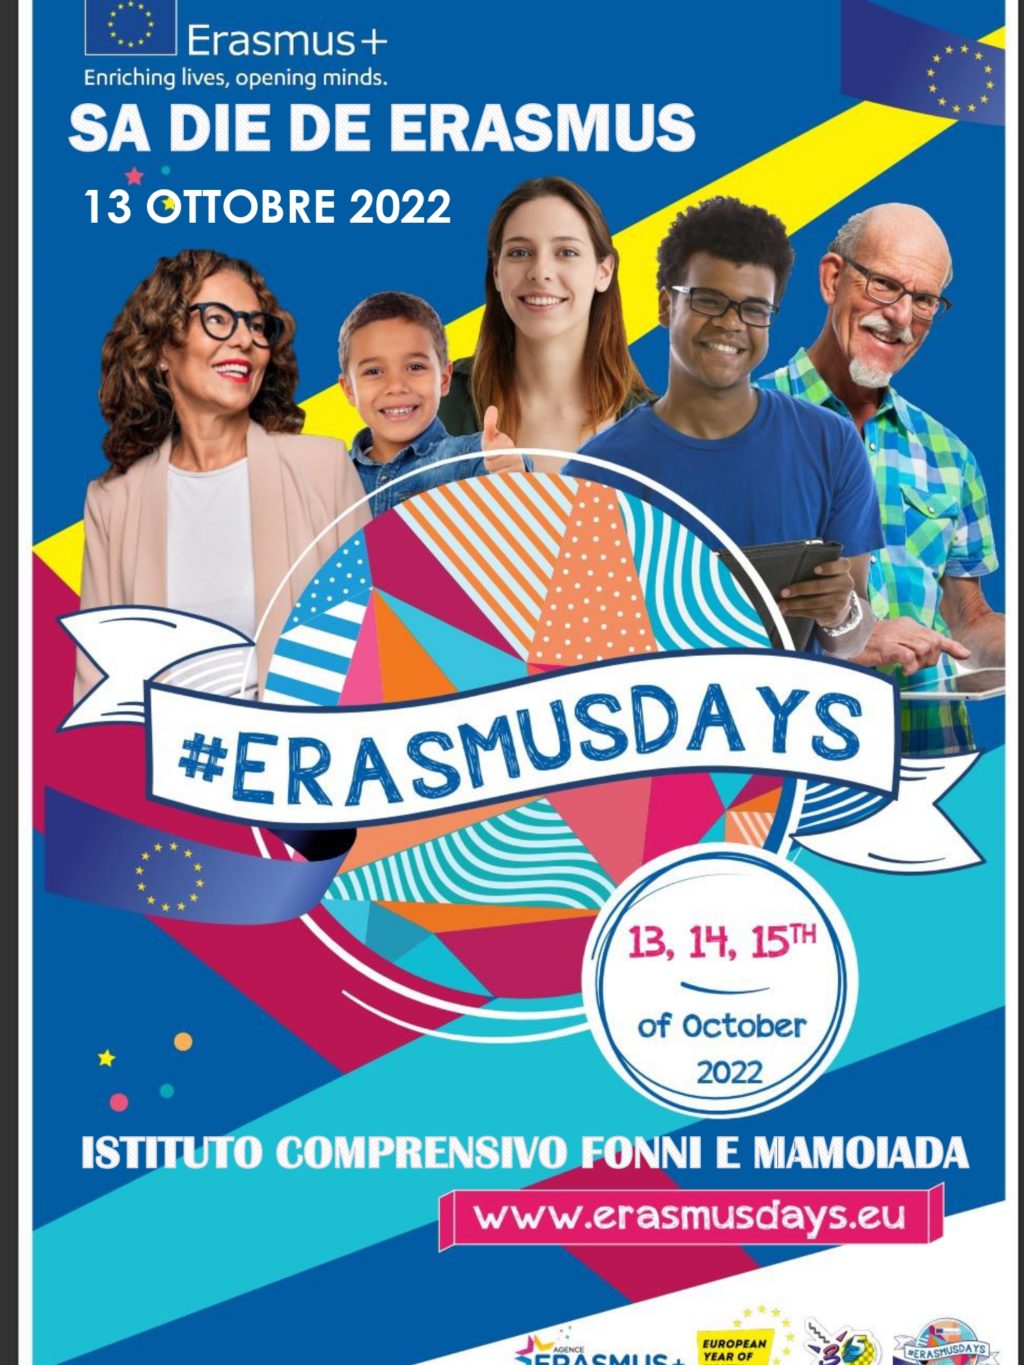 Erasmusdays-Fonni-e-Mamoiada-Locandina_page-0001.jpg